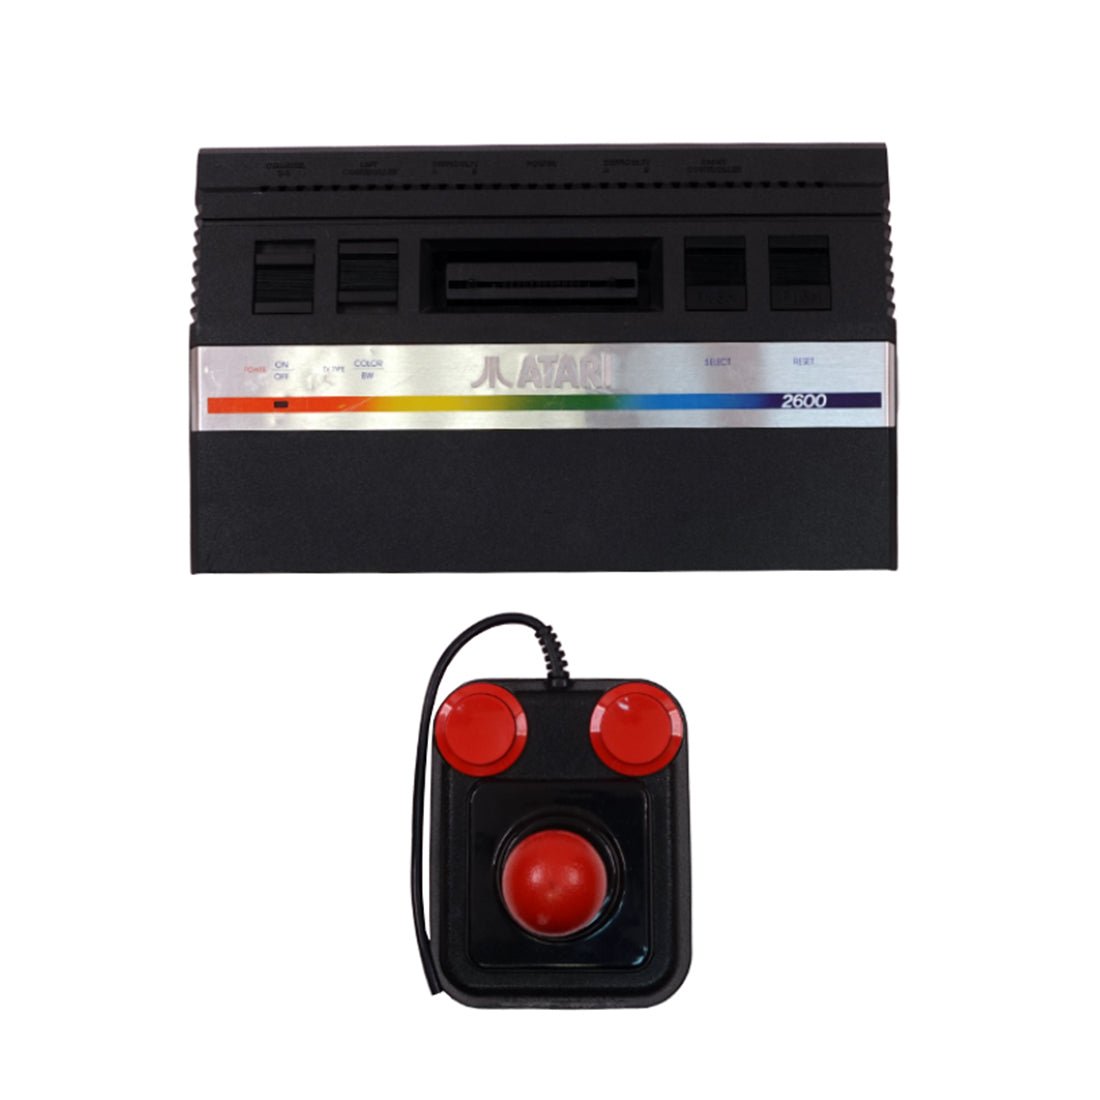 (Pre-Owned) Atari Console - Black - Store 974 | ستور ٩٧٤